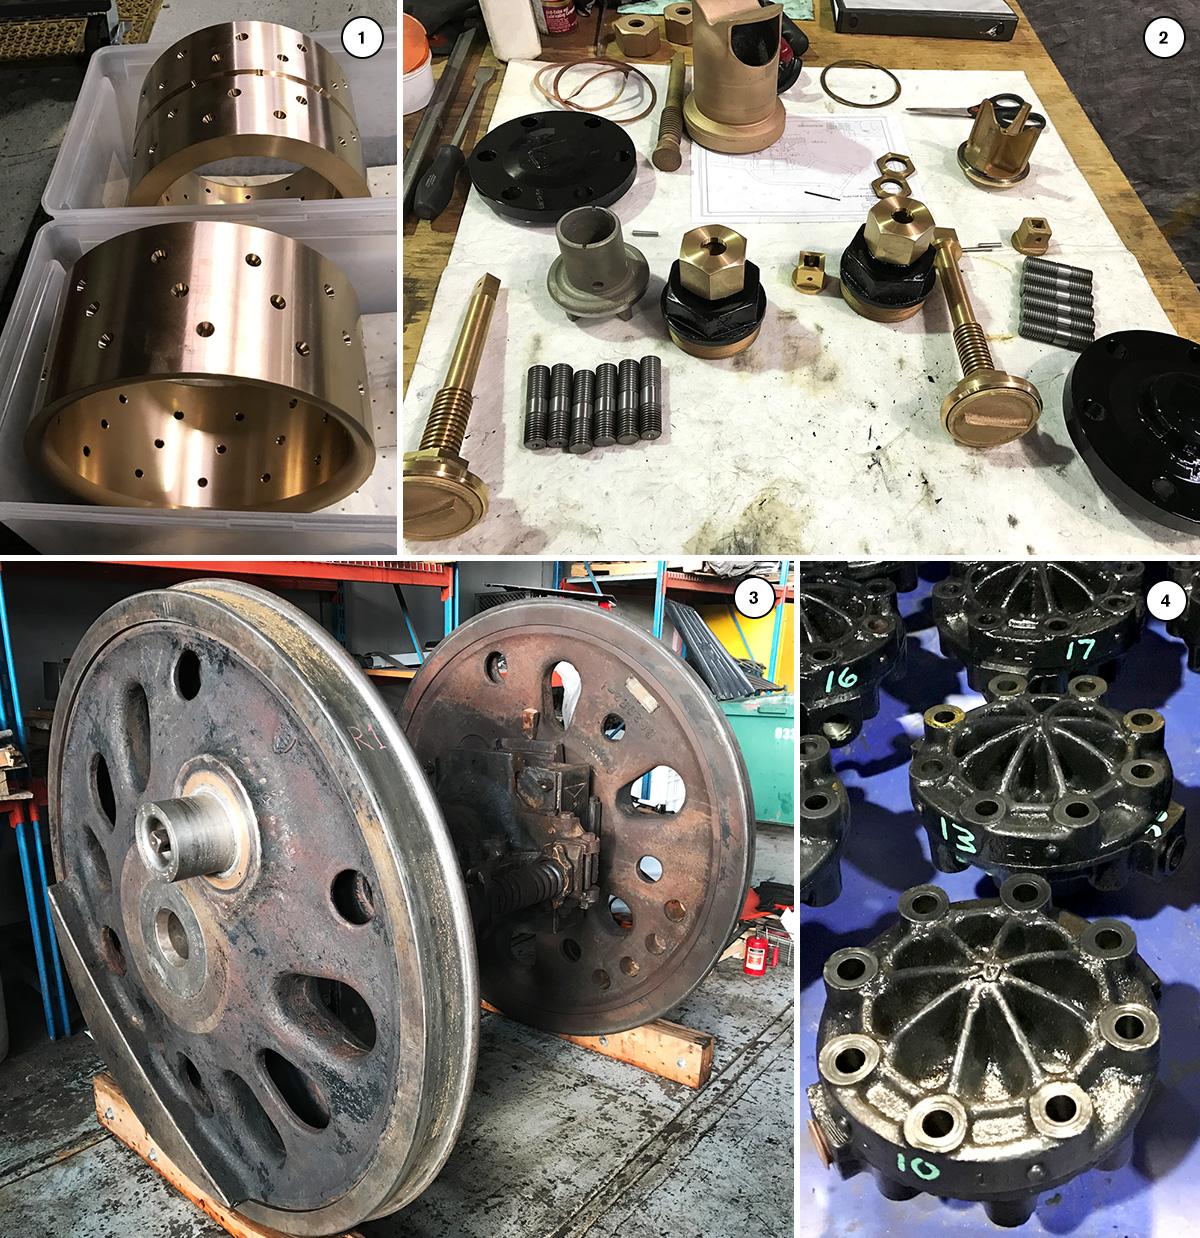 Original | Locomotive No. 4014 parts collage.